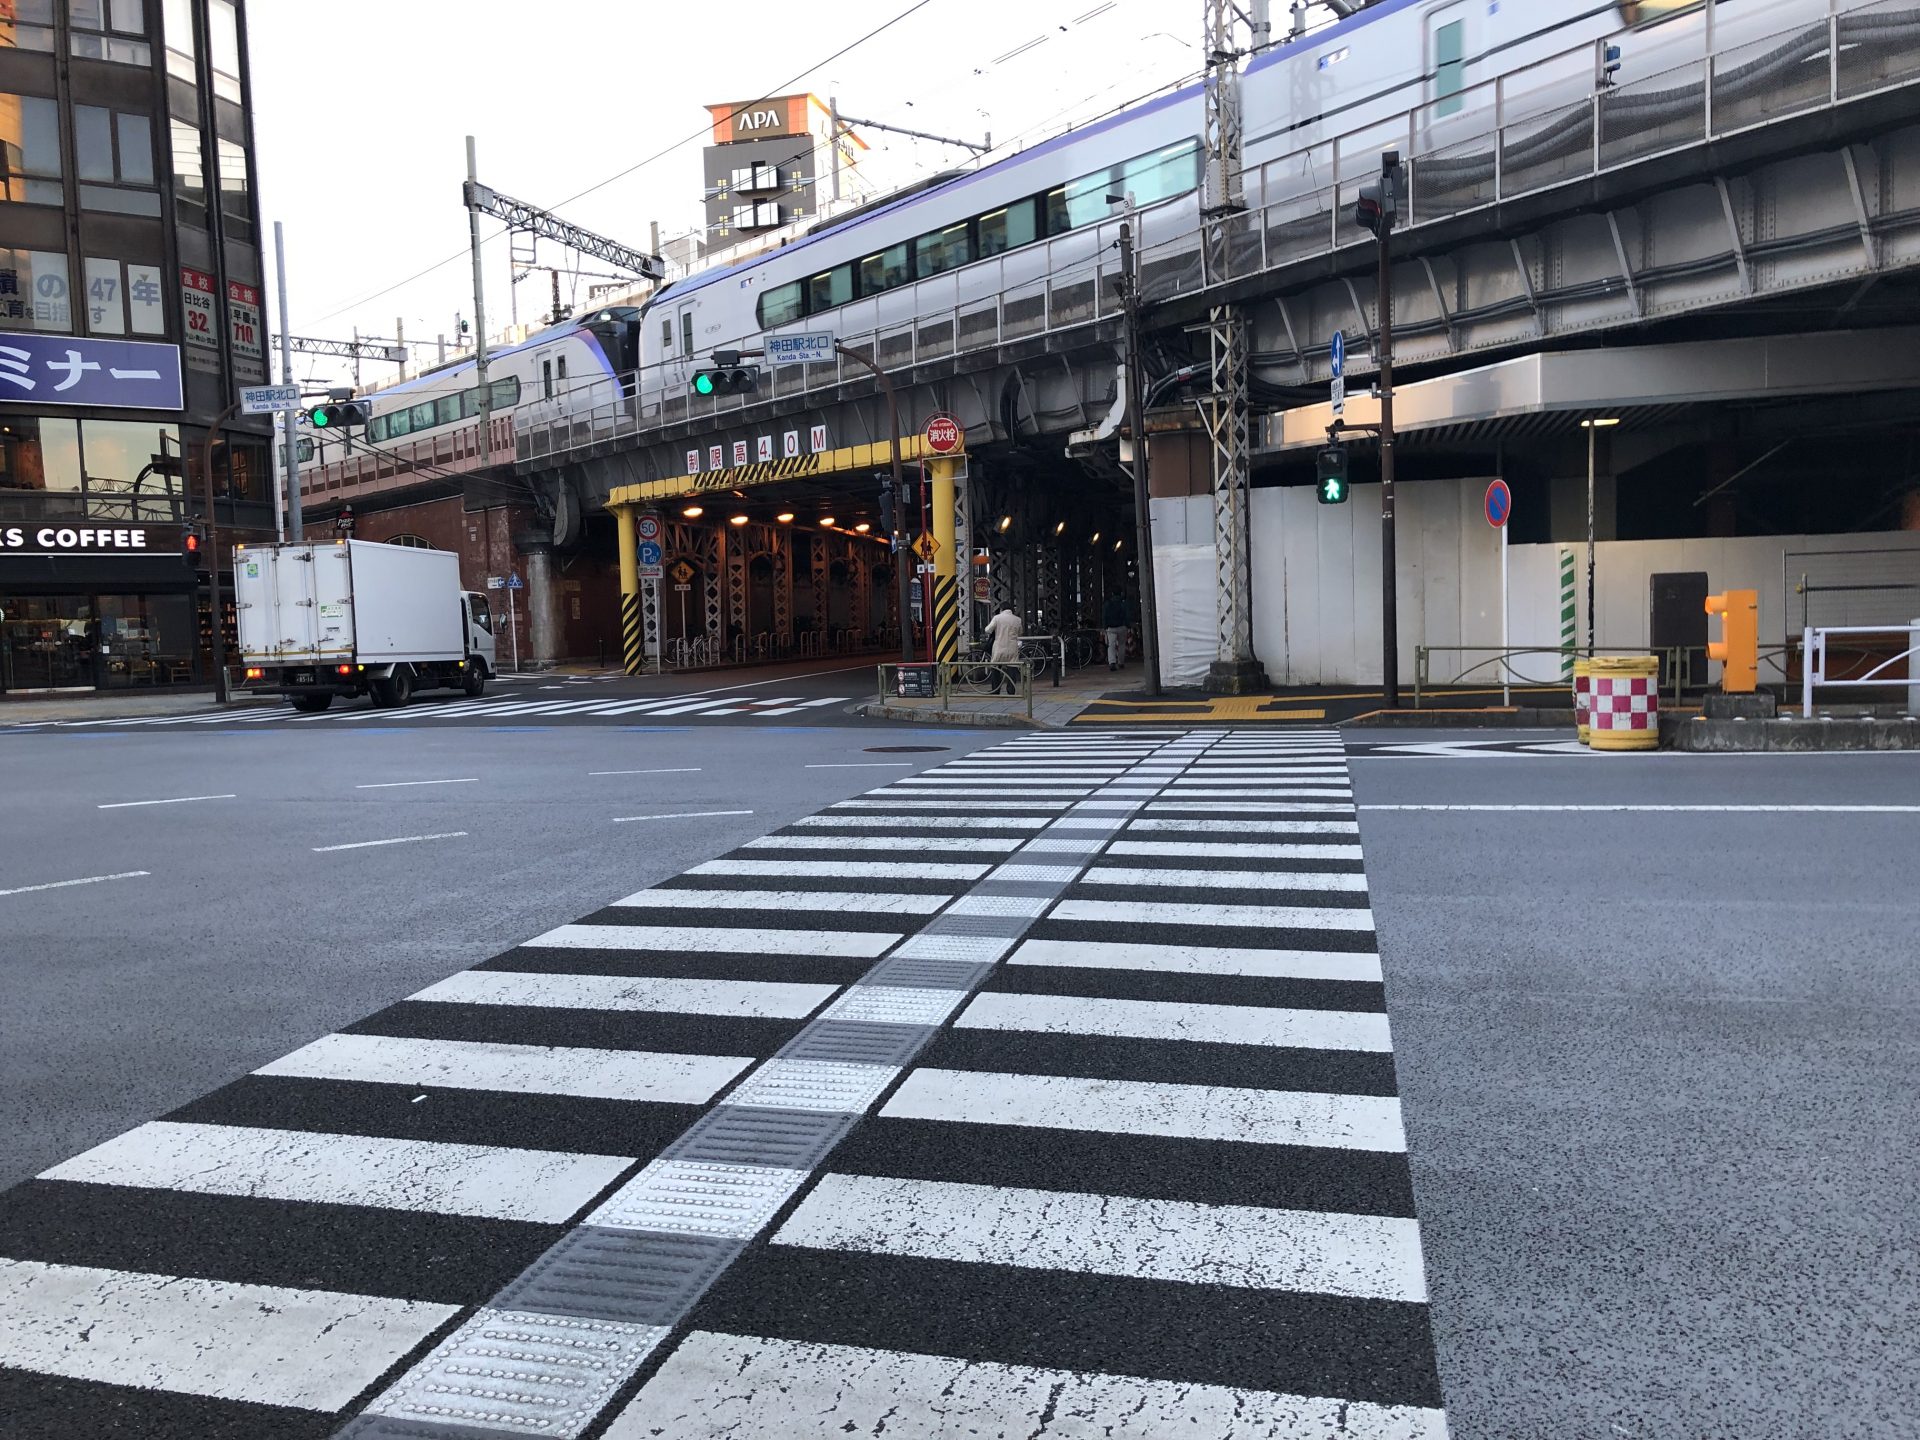 ビジネスエアポート神田 「神田駅北口」の交差点の横断歩道をJR側に渡る